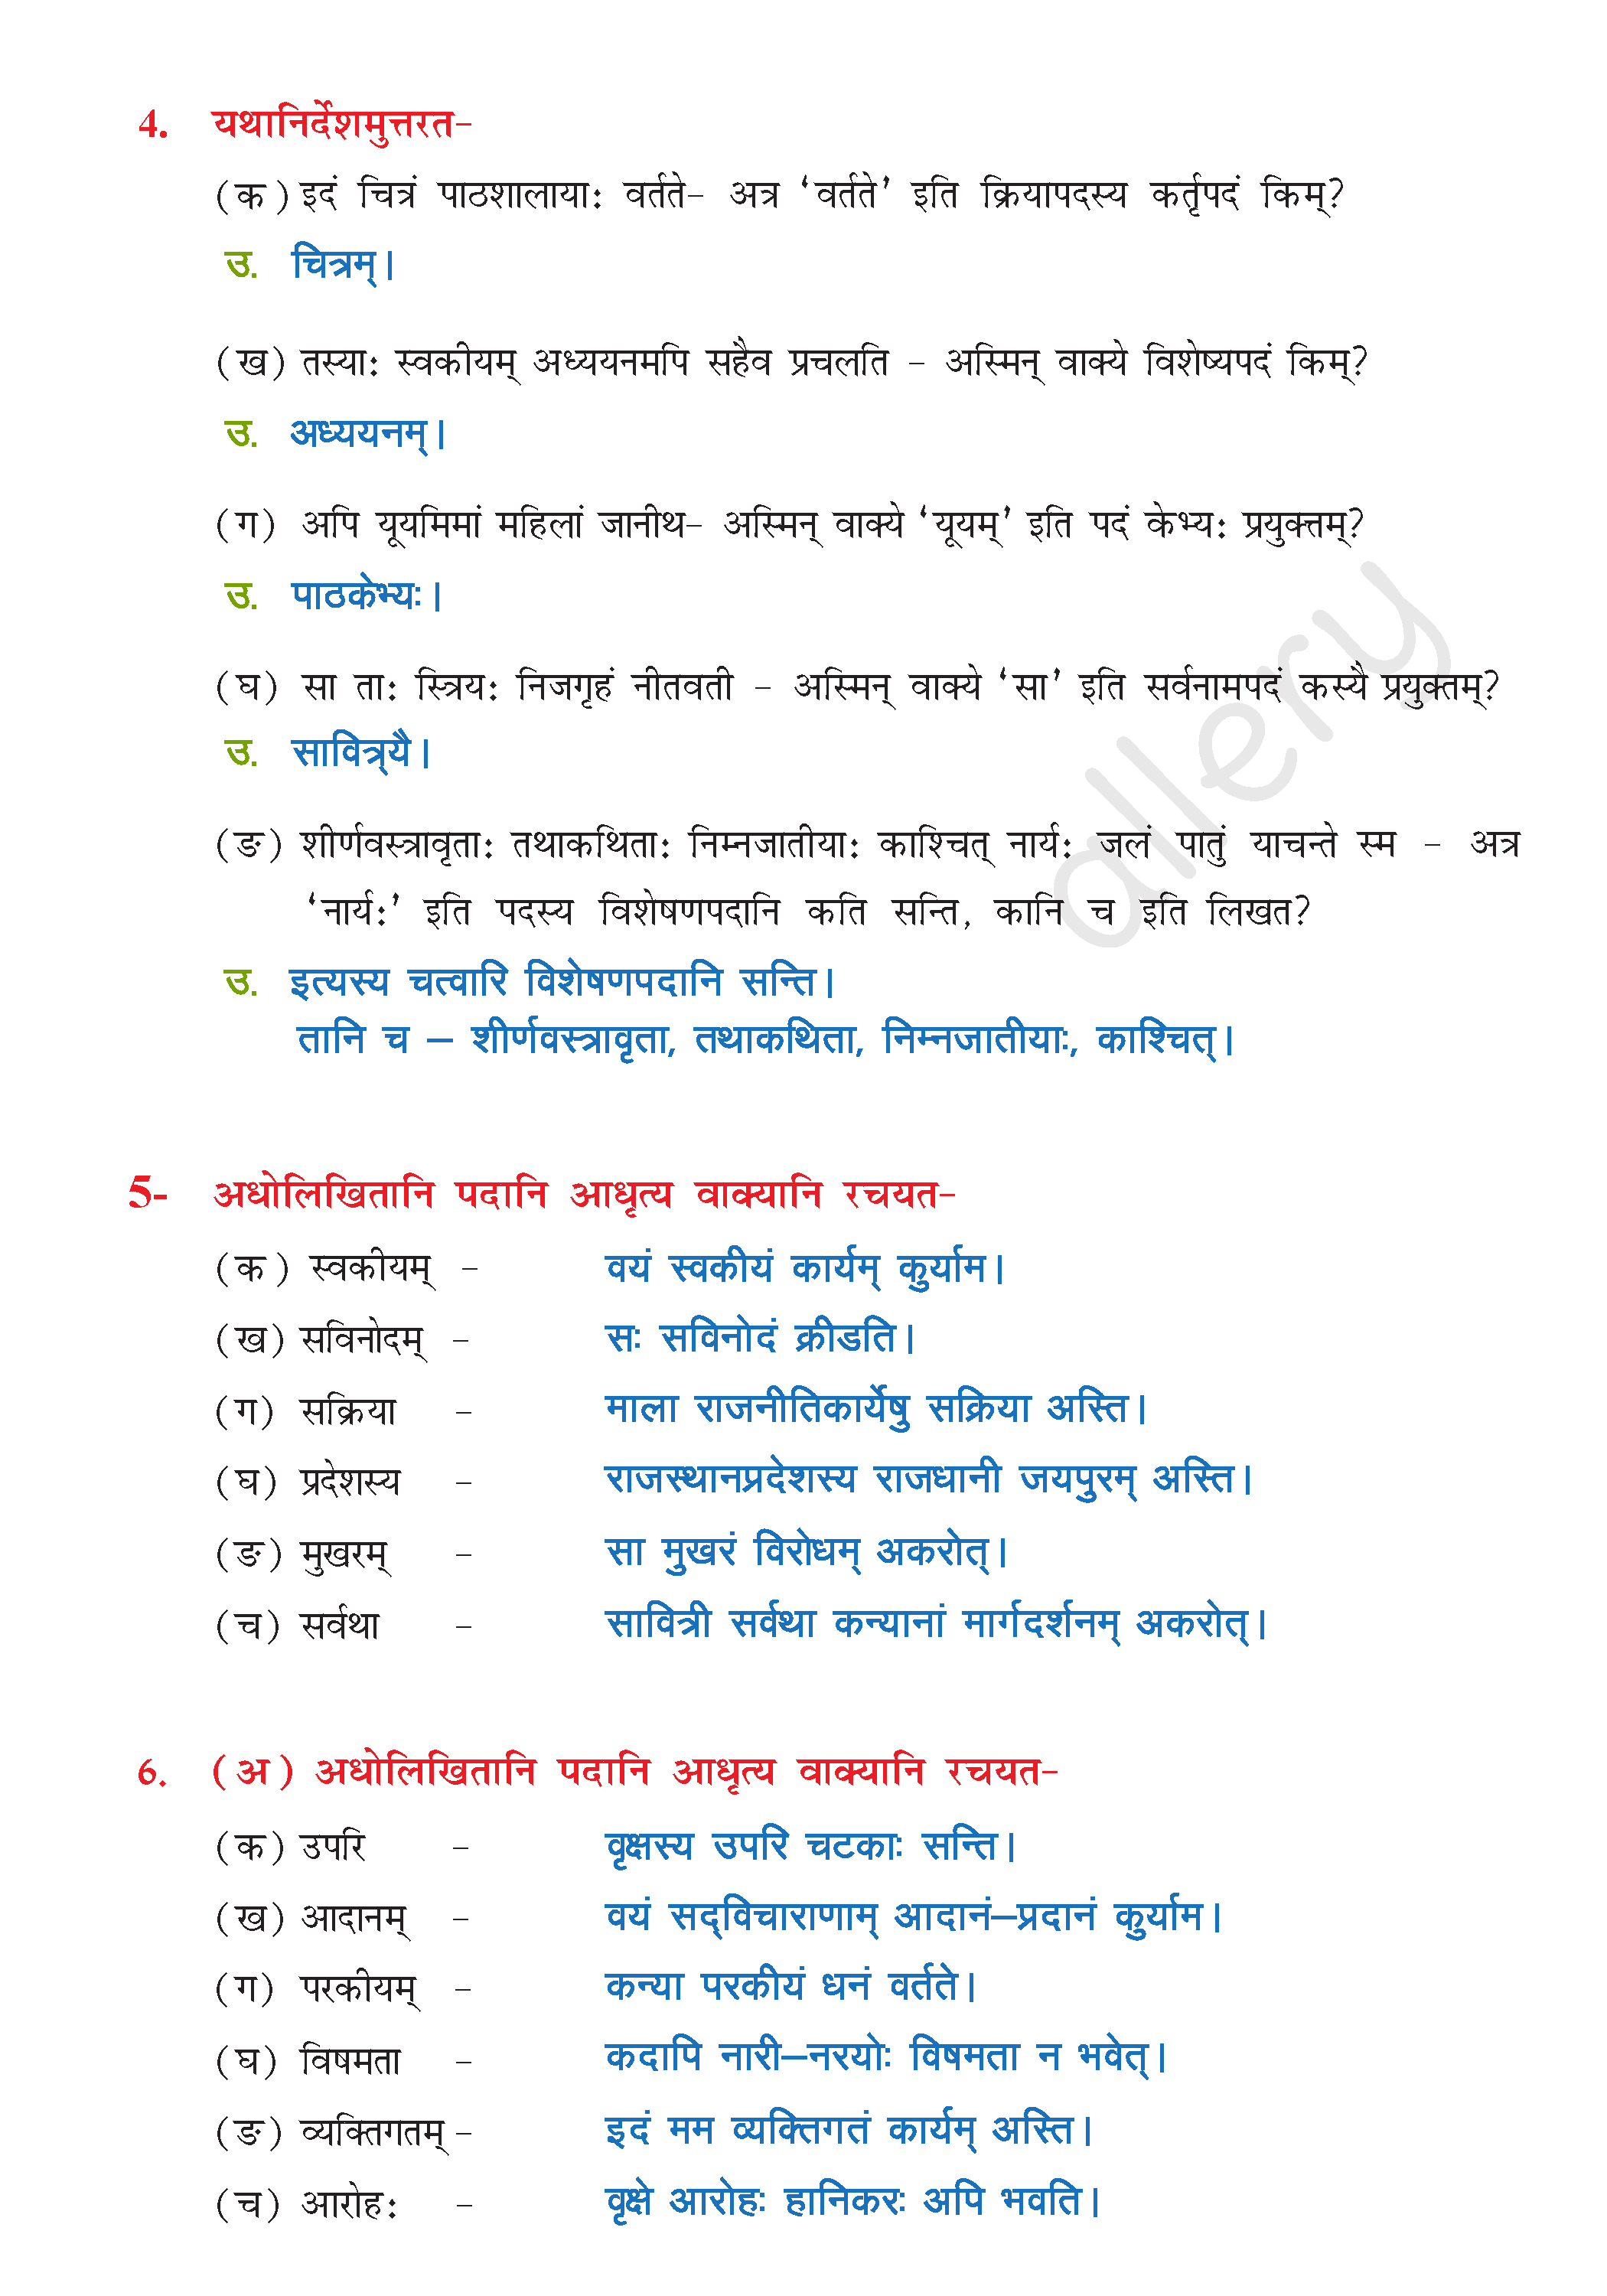 NCERT Solution For Class 8 Sanskrit Chapter 11 part 6